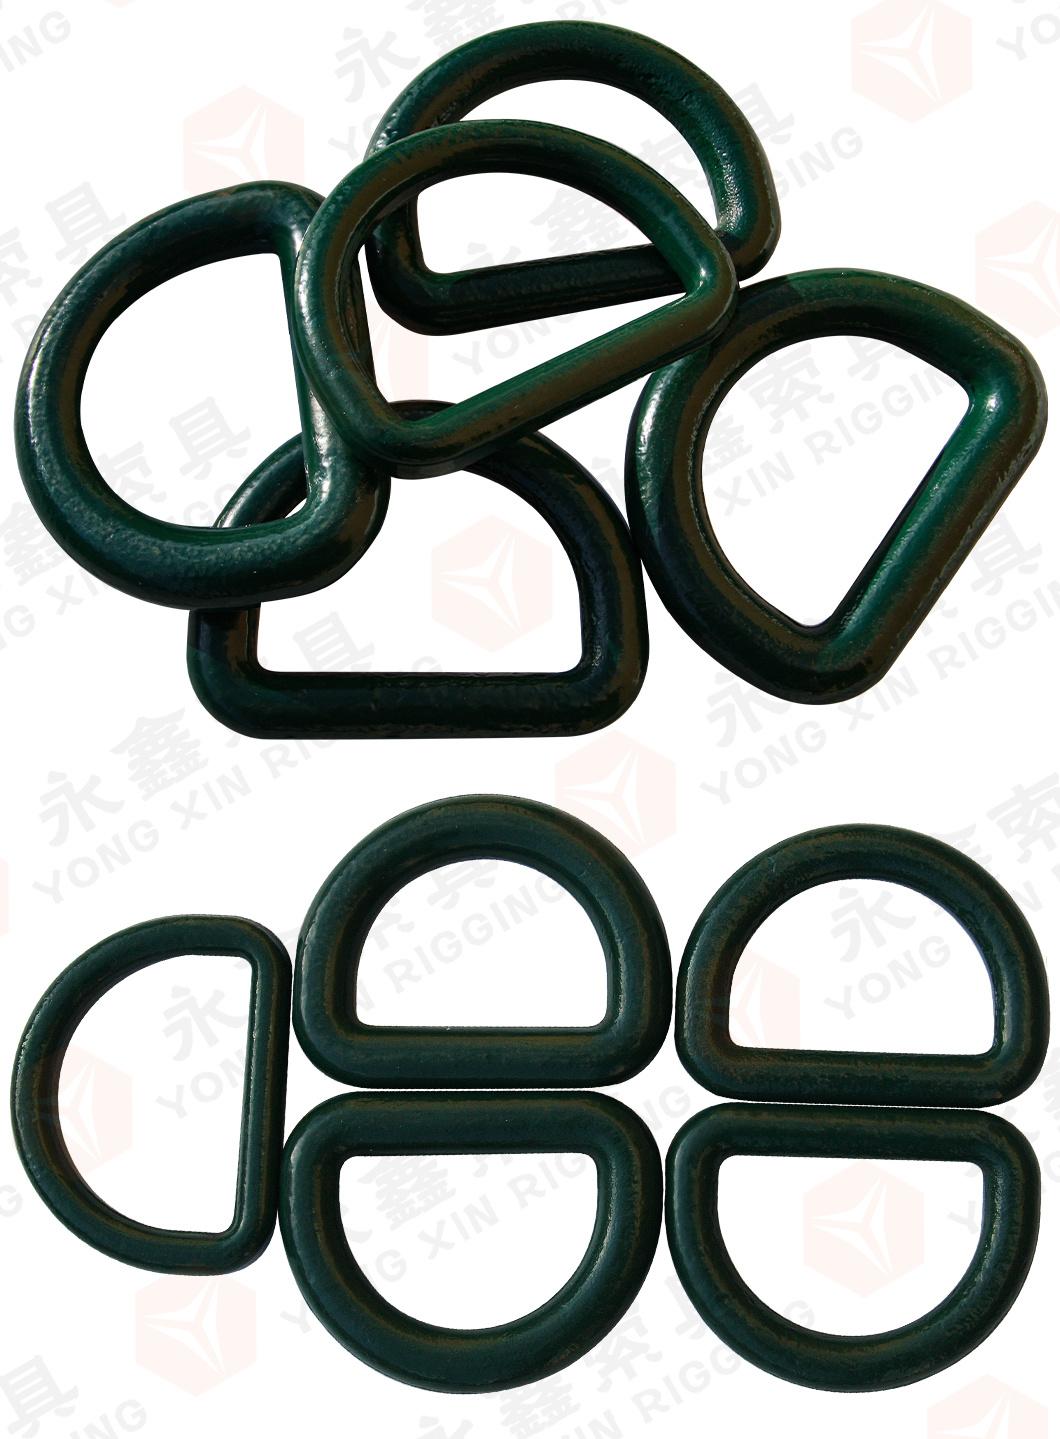 Heavy Duty Black Welded Alloy Steel D Ring Solid Metal Rings